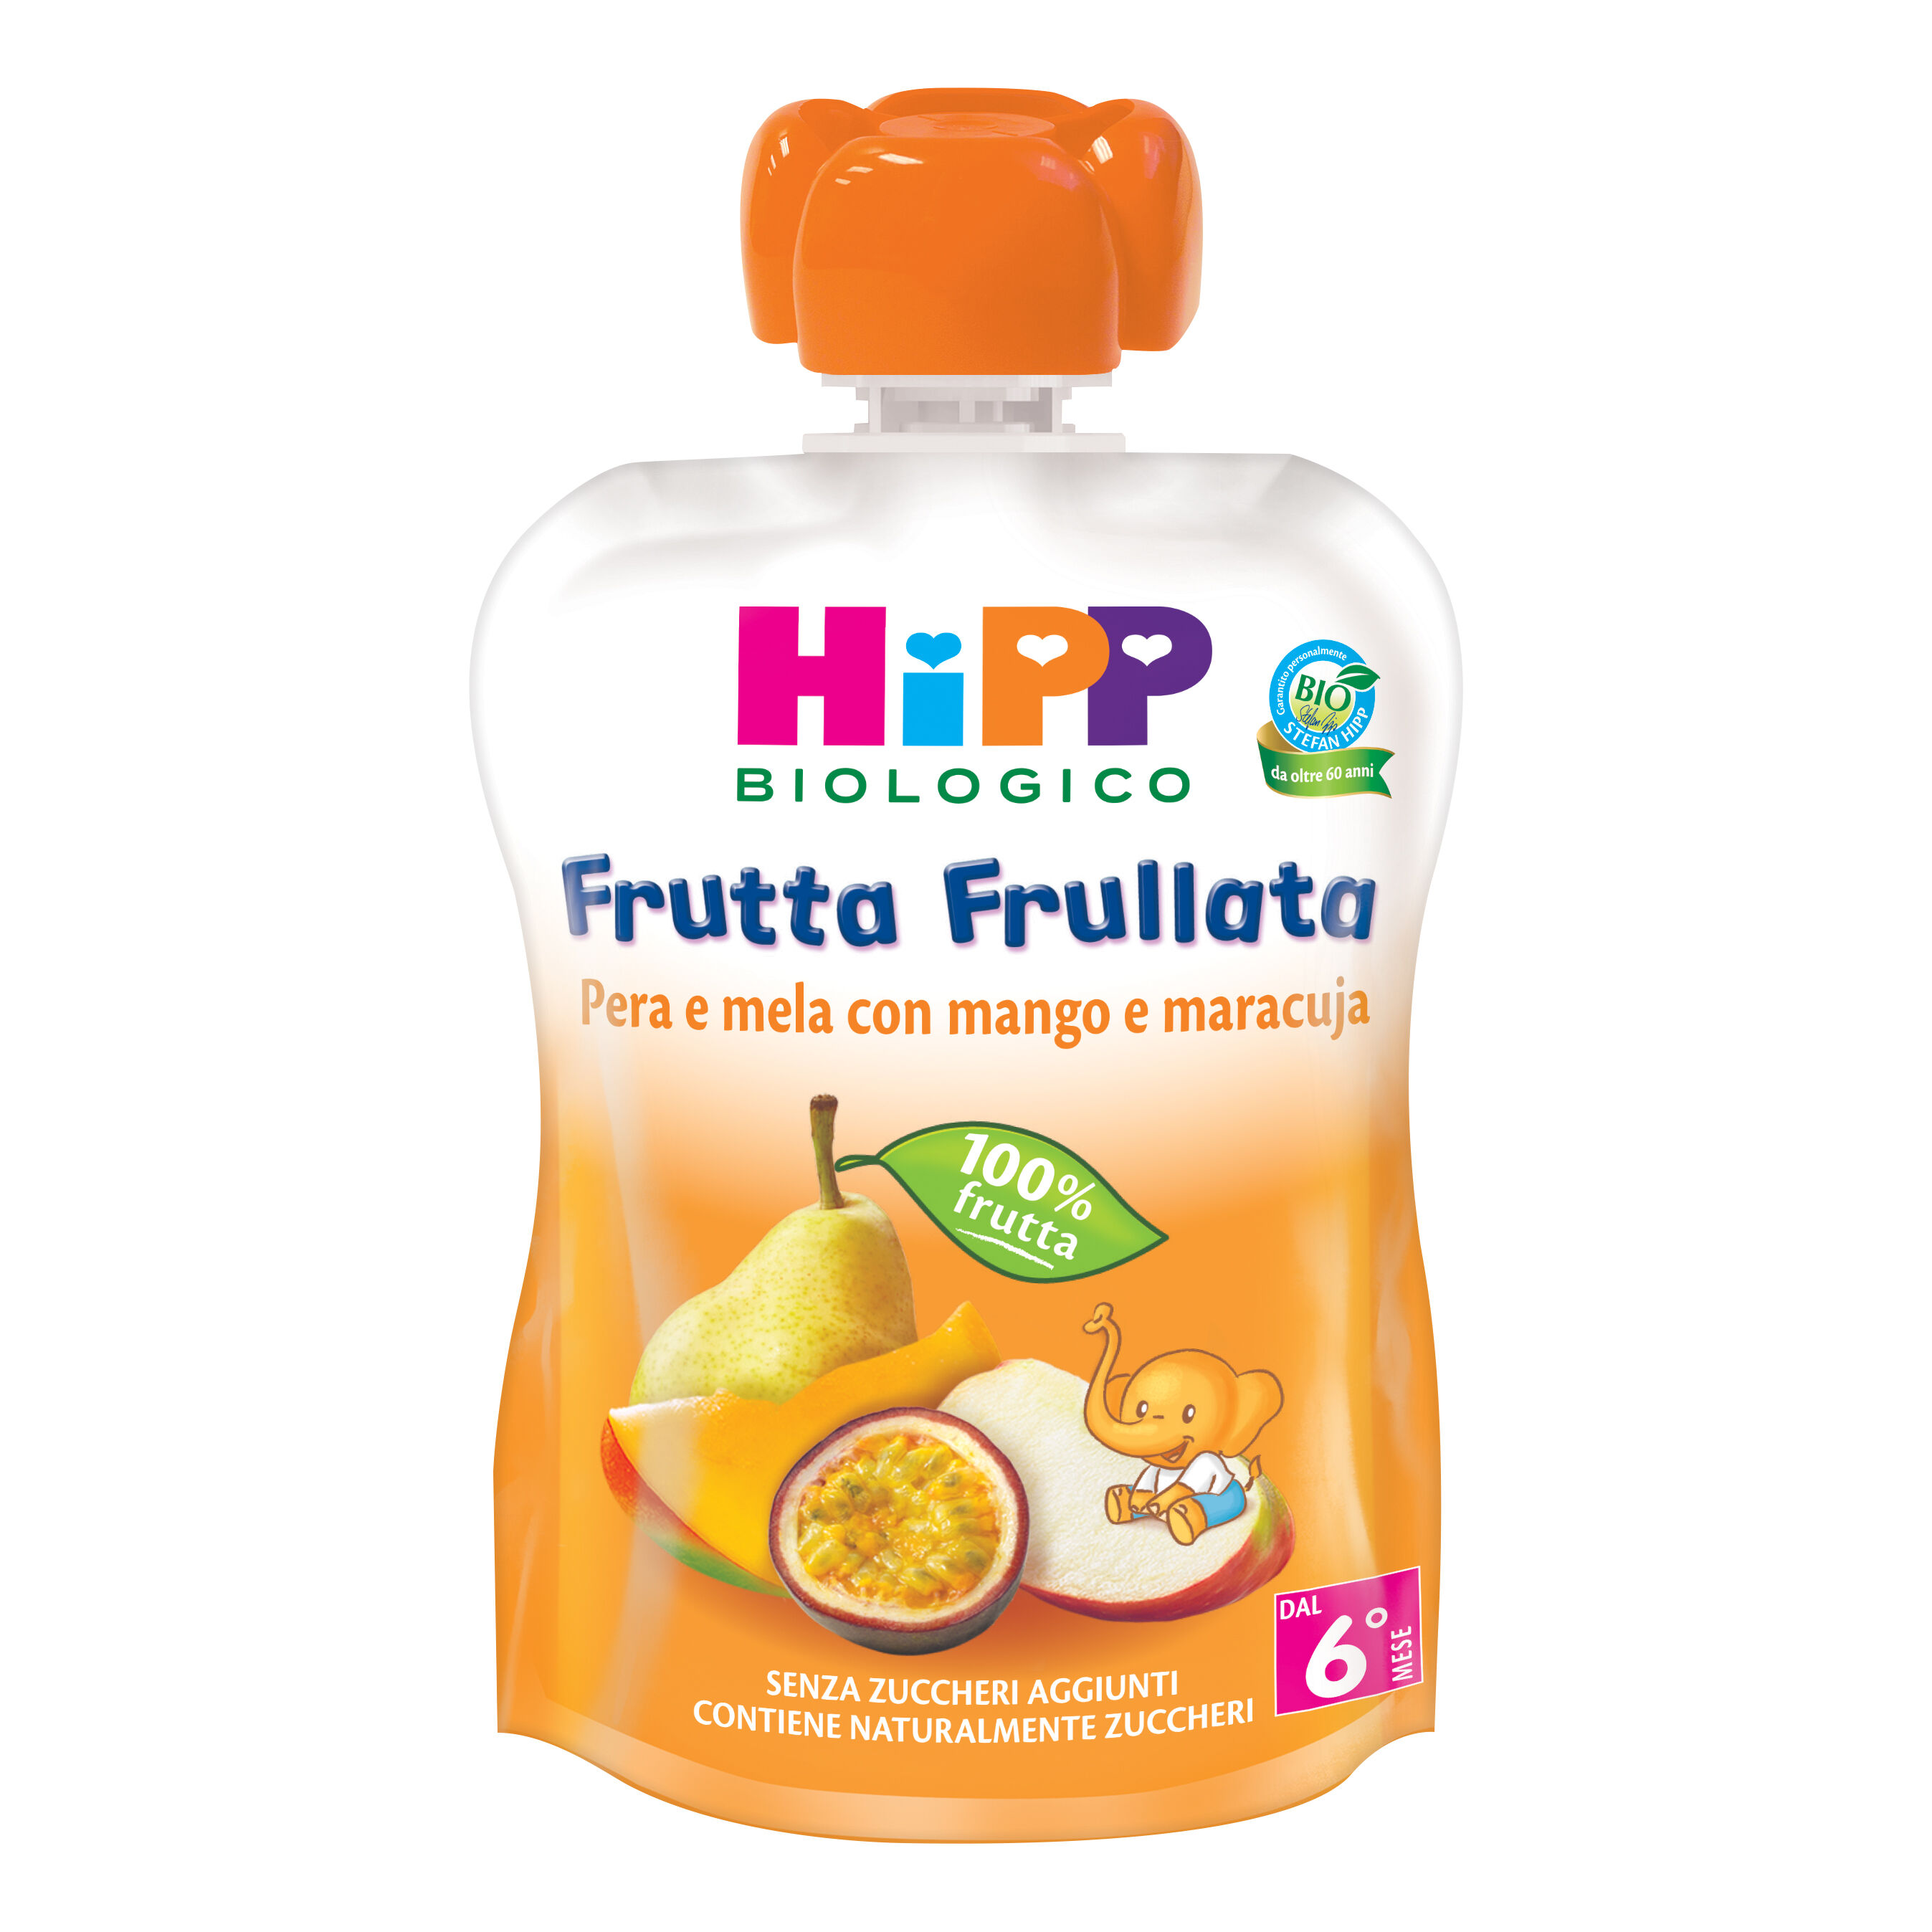 Hipp Italia Srl Hipp Frutta Frull Per/mel/mang